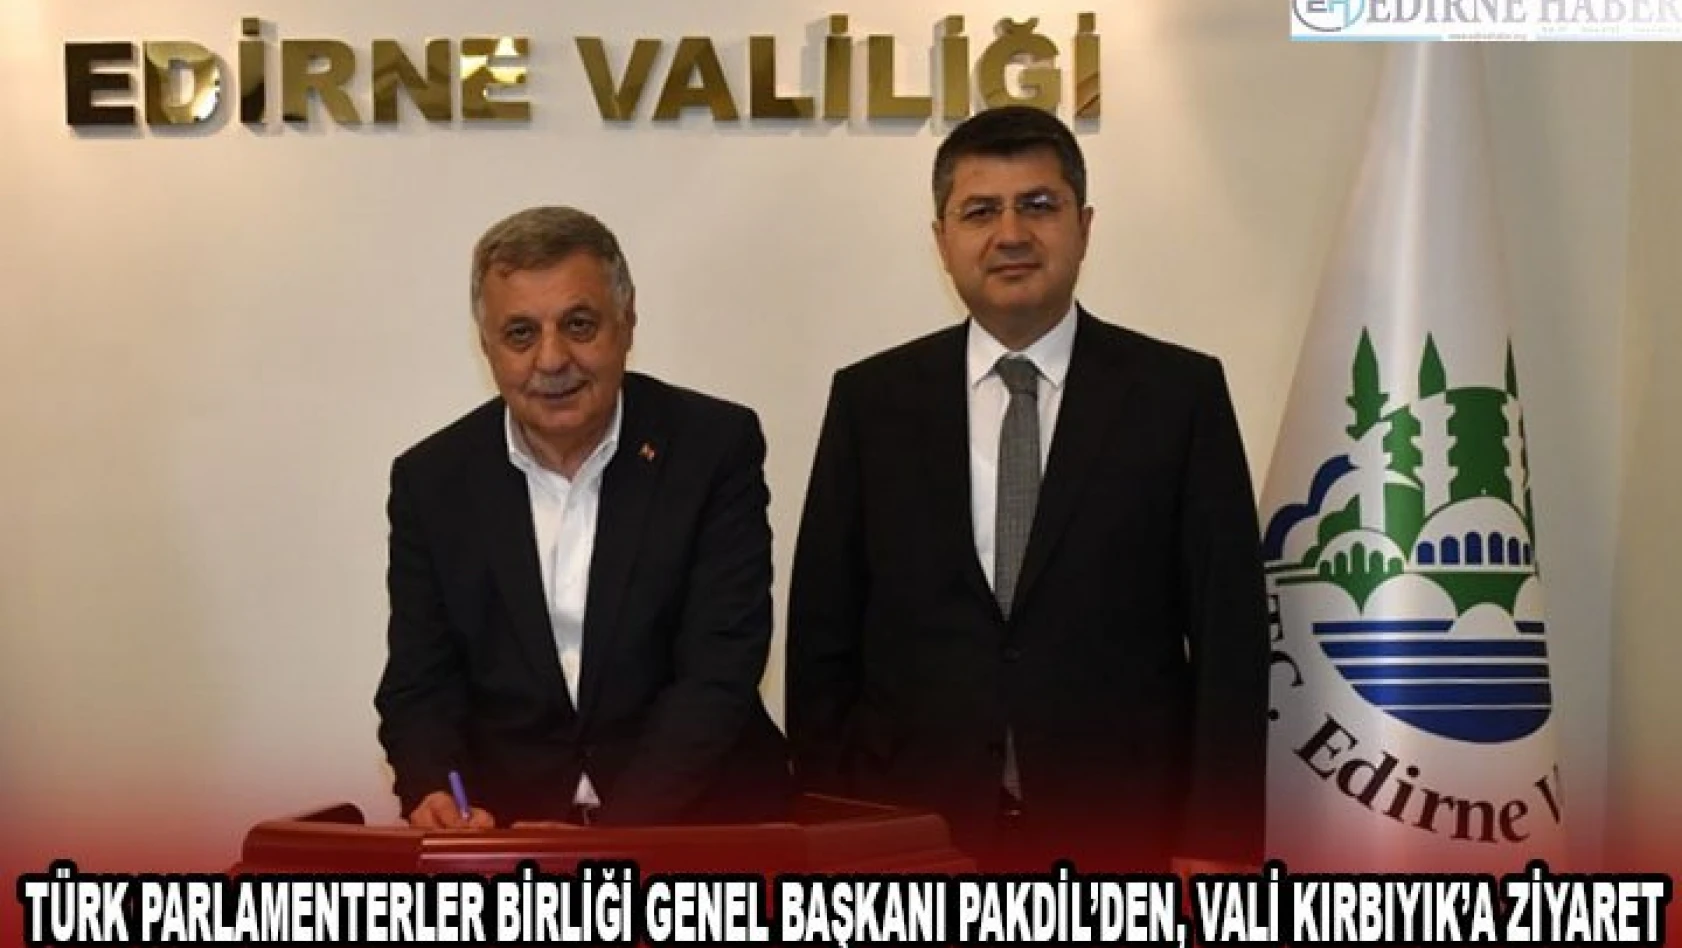 Türk Parlamenterler Birliği Genel Başkanı Pakdil'den, Vali Kırbıyık'a ziyaret